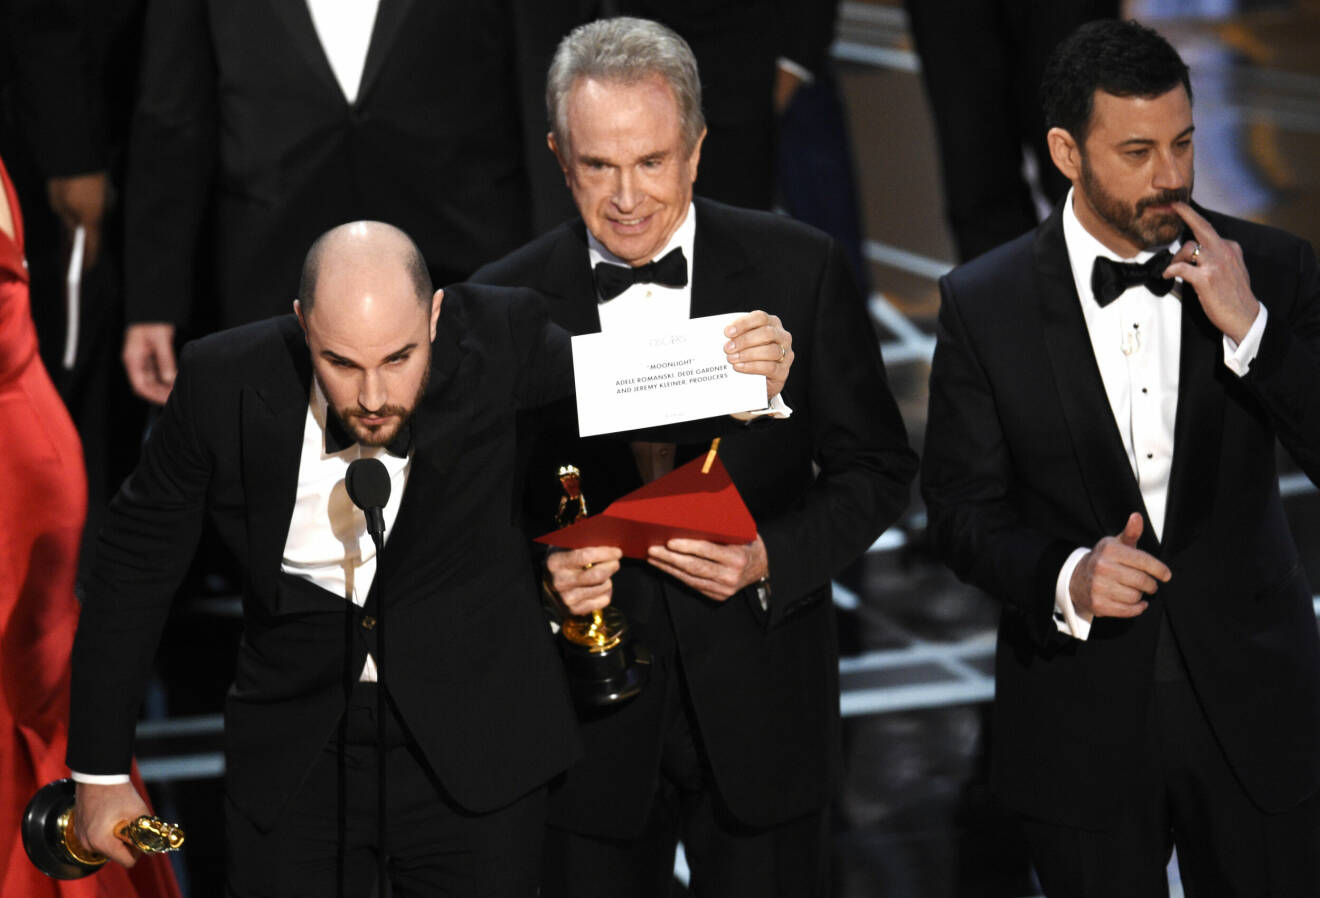 Efter stor förvirring håller Jordan Horowitz (t v) upp kuvertet som anger filmen Moonlight som den rättmätiga vinnaren av priset ”årets film” vid Oscarsgalan 2017.